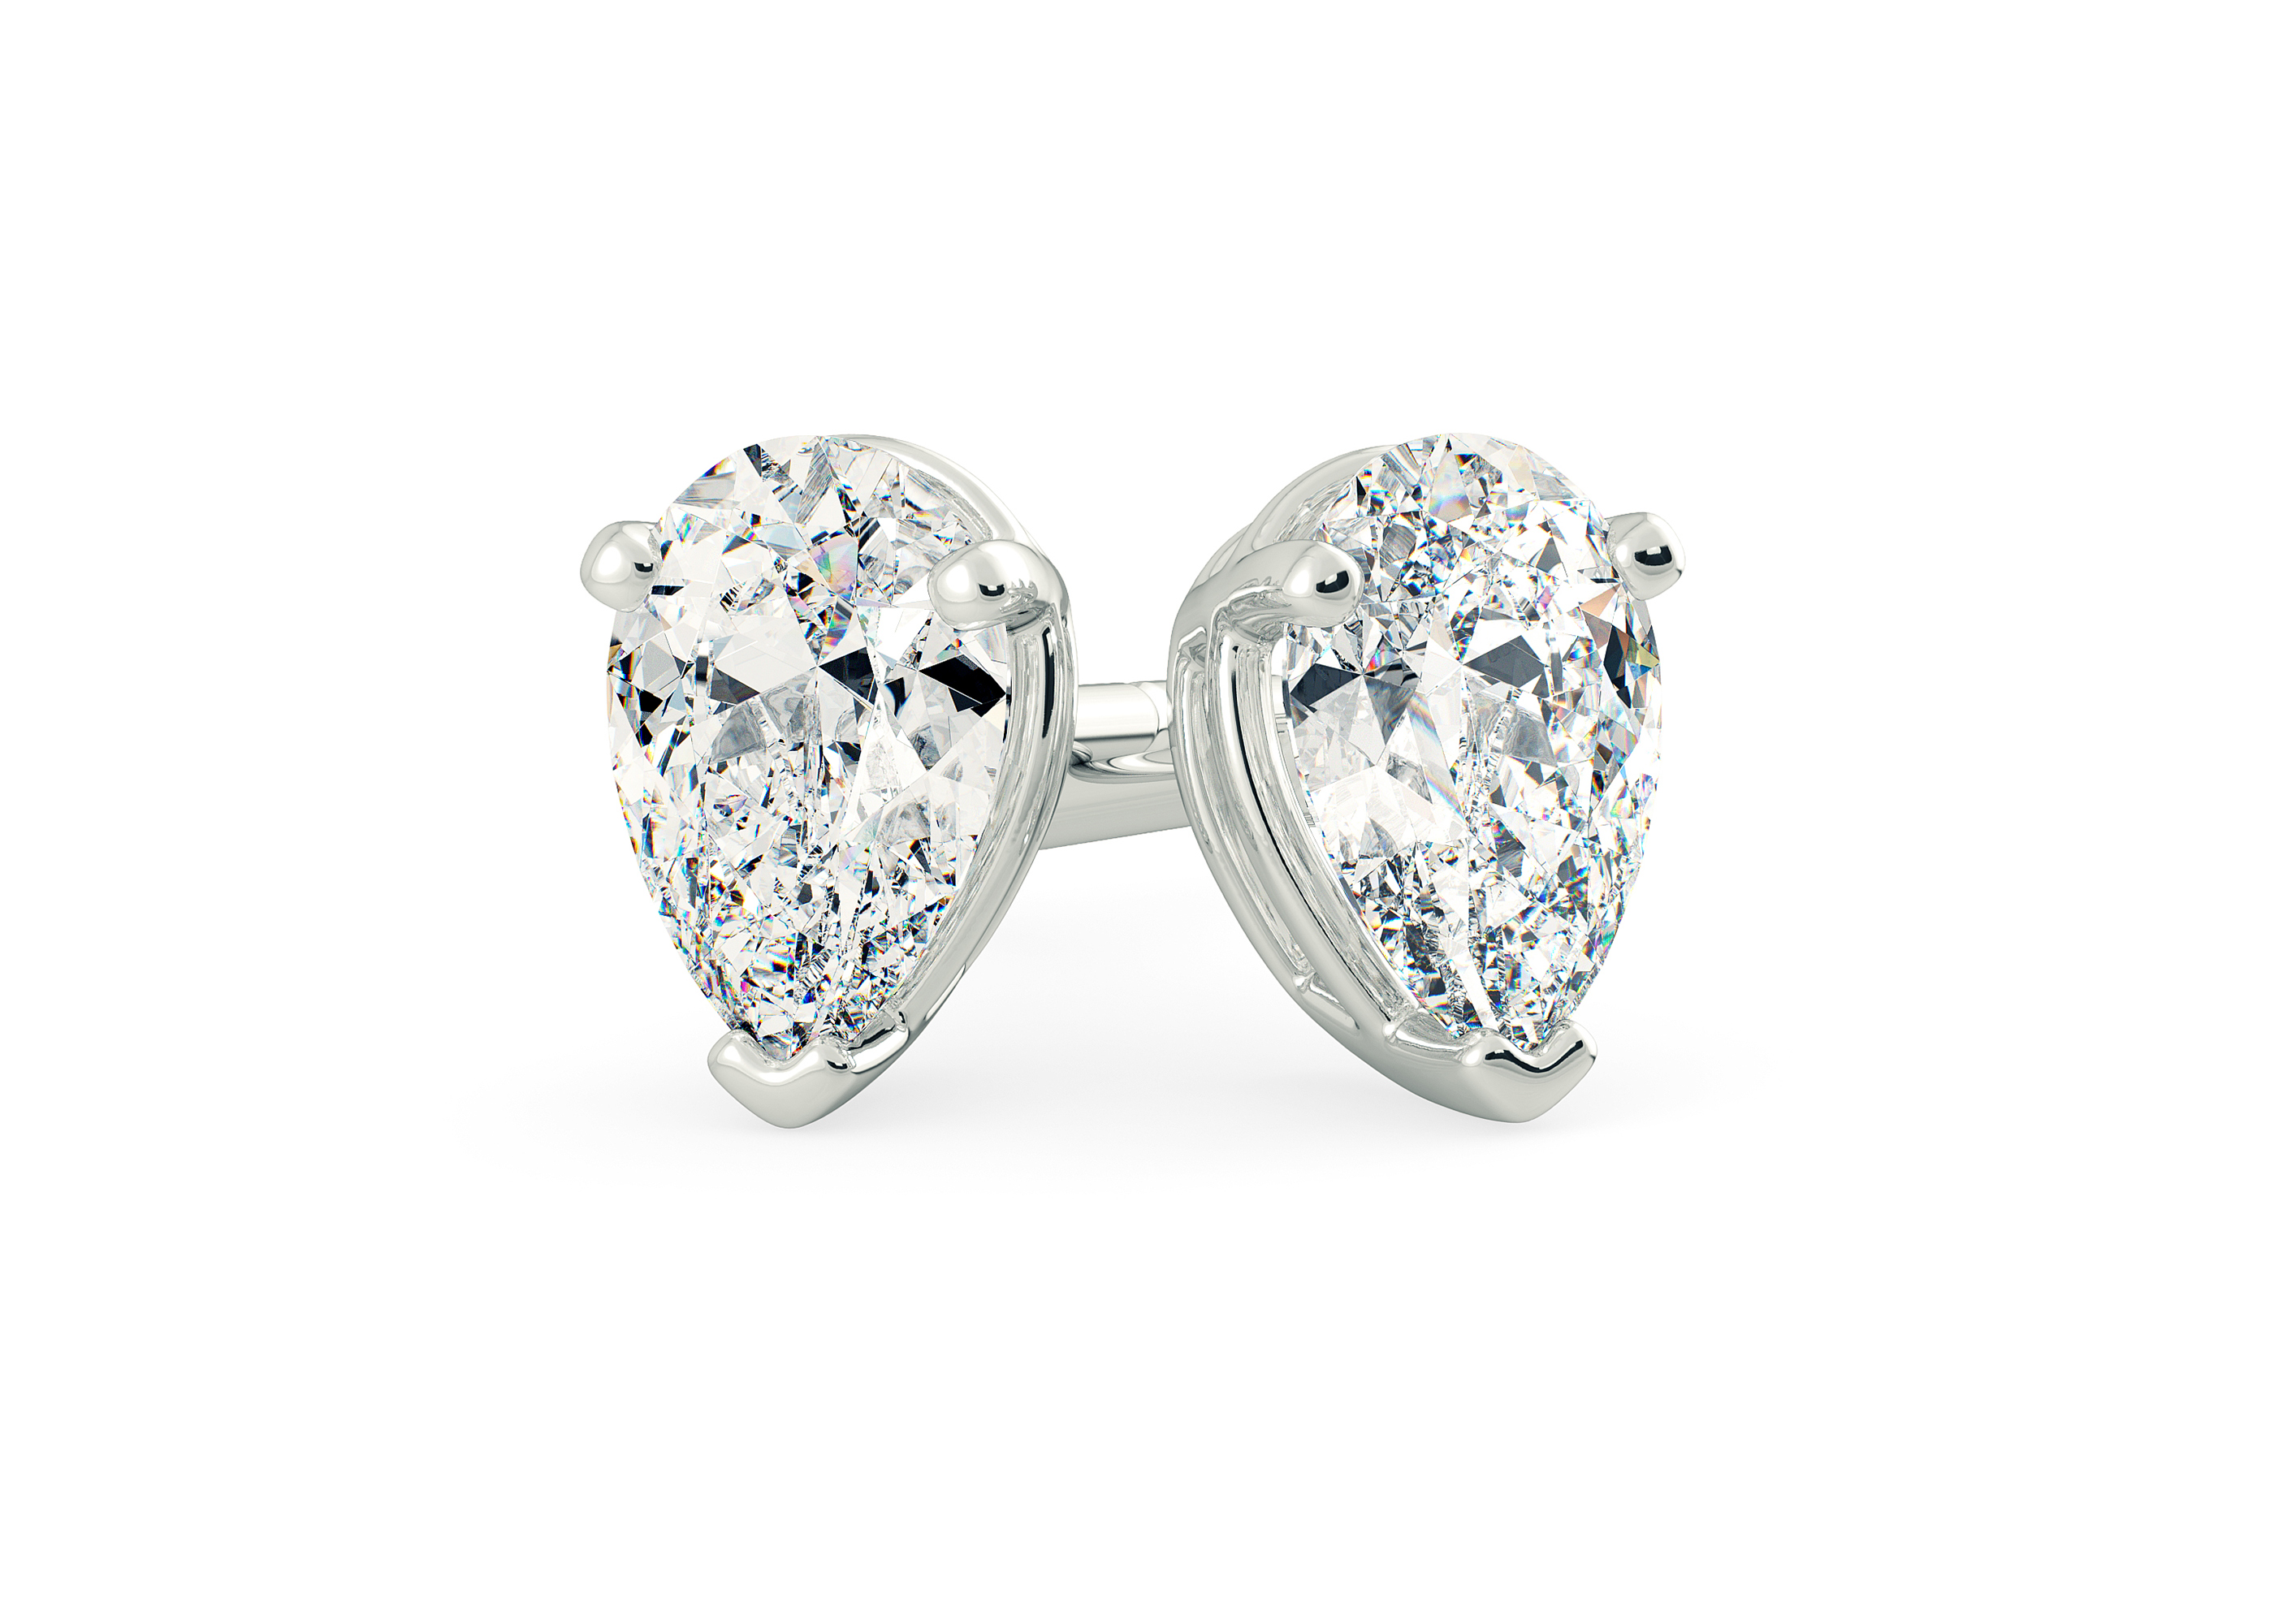 Half Carat Pear Diamond Stud Earrings in 18K White Gold